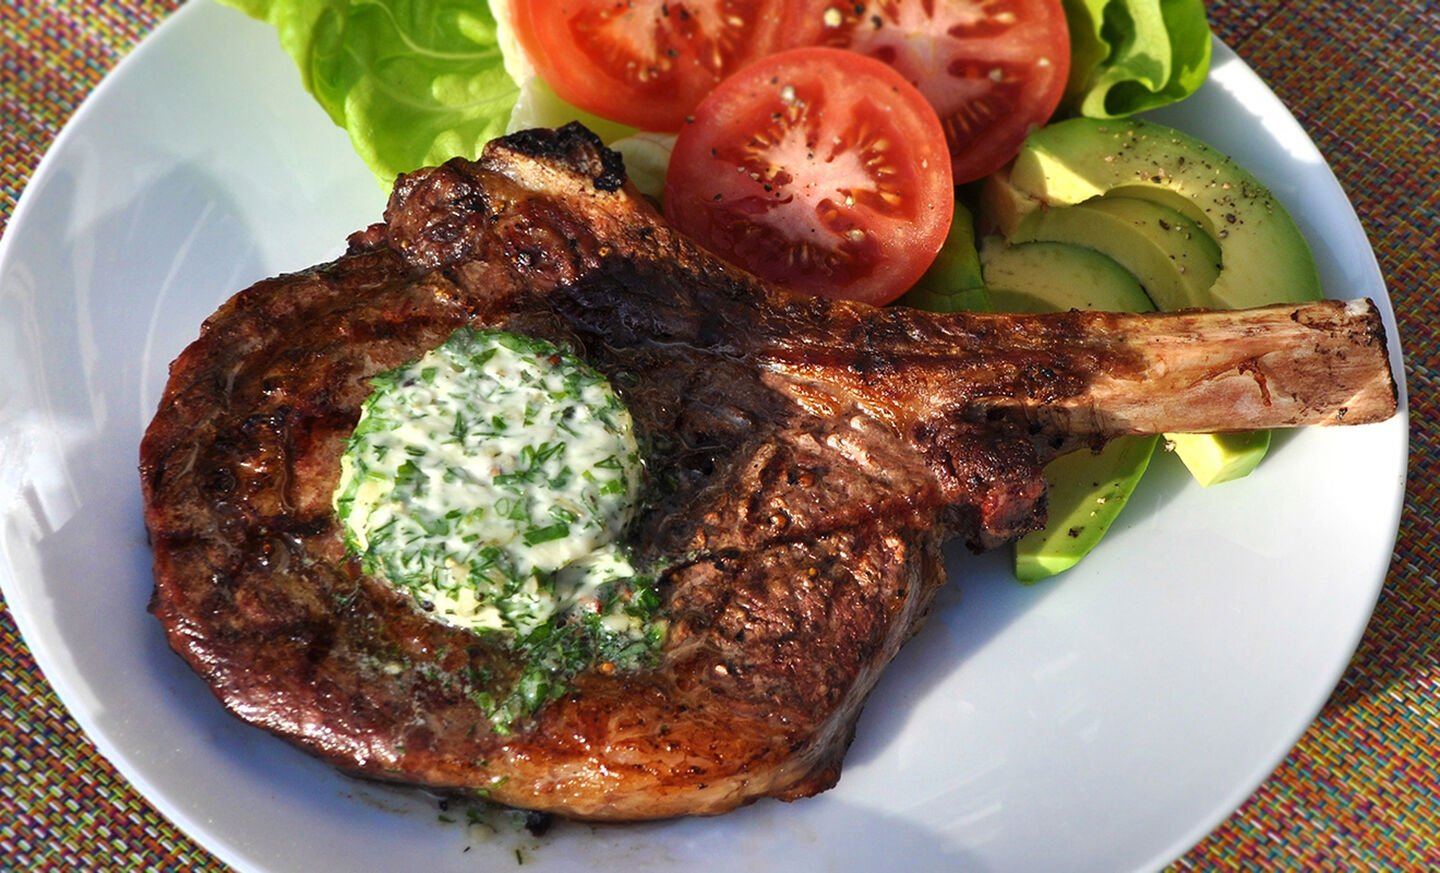 Grilled Steak with Garlic-Herb Butter Recipe | D'Artagnan